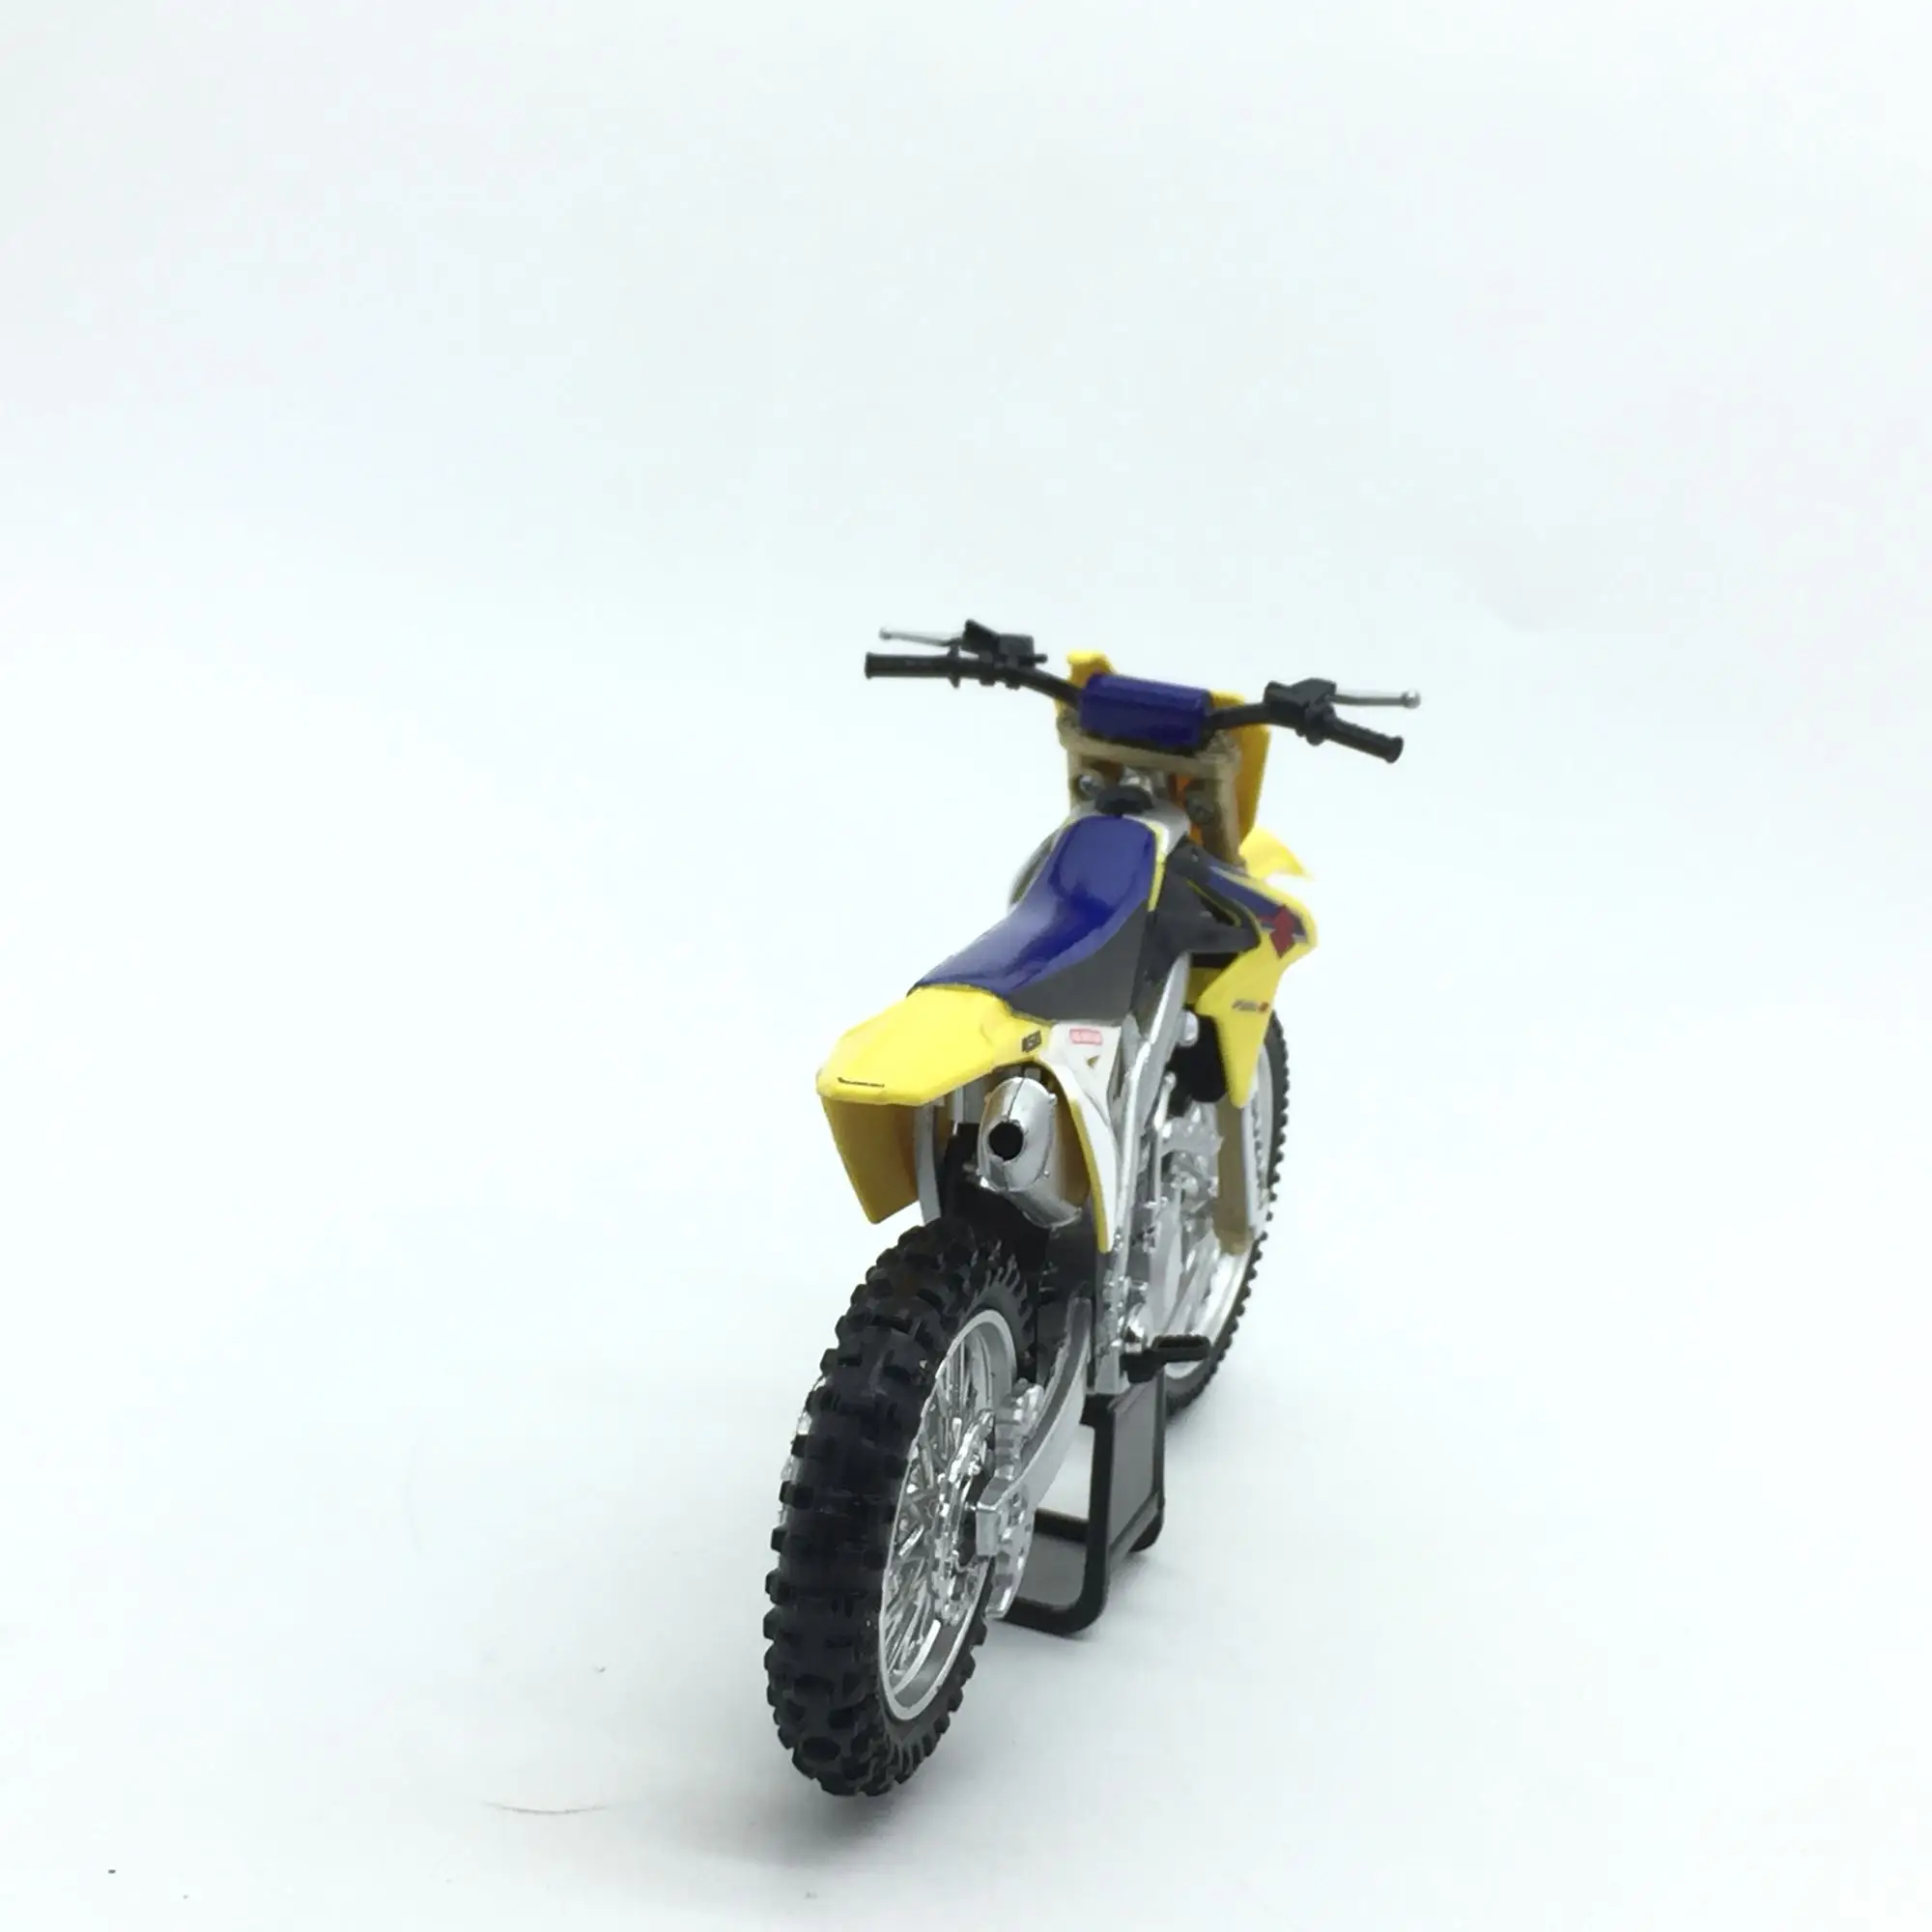 NEWRAY масштаба 1/12 мотоцикл модель игрушки SUZUKI RM-Z литья под давлением Металл мотоциклов Модель игрушки для сбора/подарок/Дети